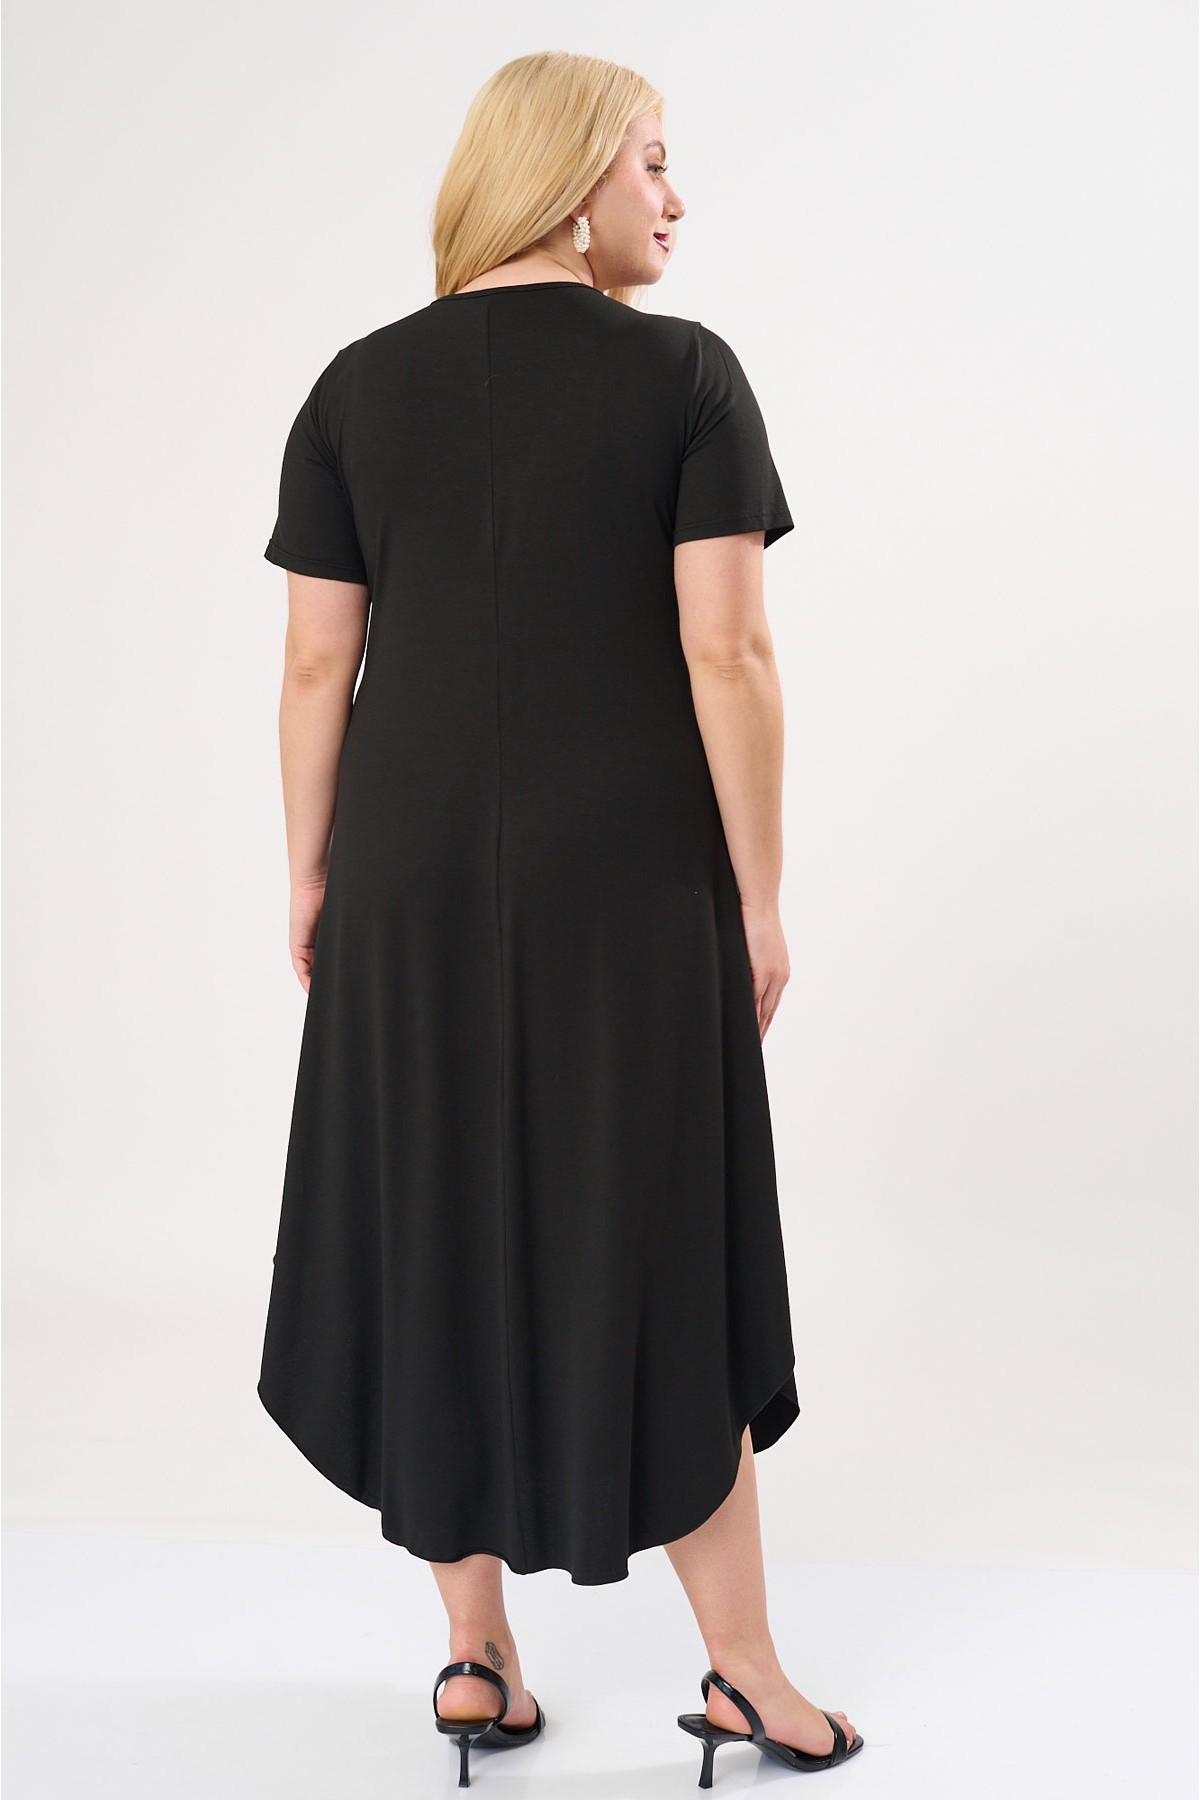 Φόρεμα με κουφόπιετα μπροστά viscose με κοντό μανίκι μαύρο